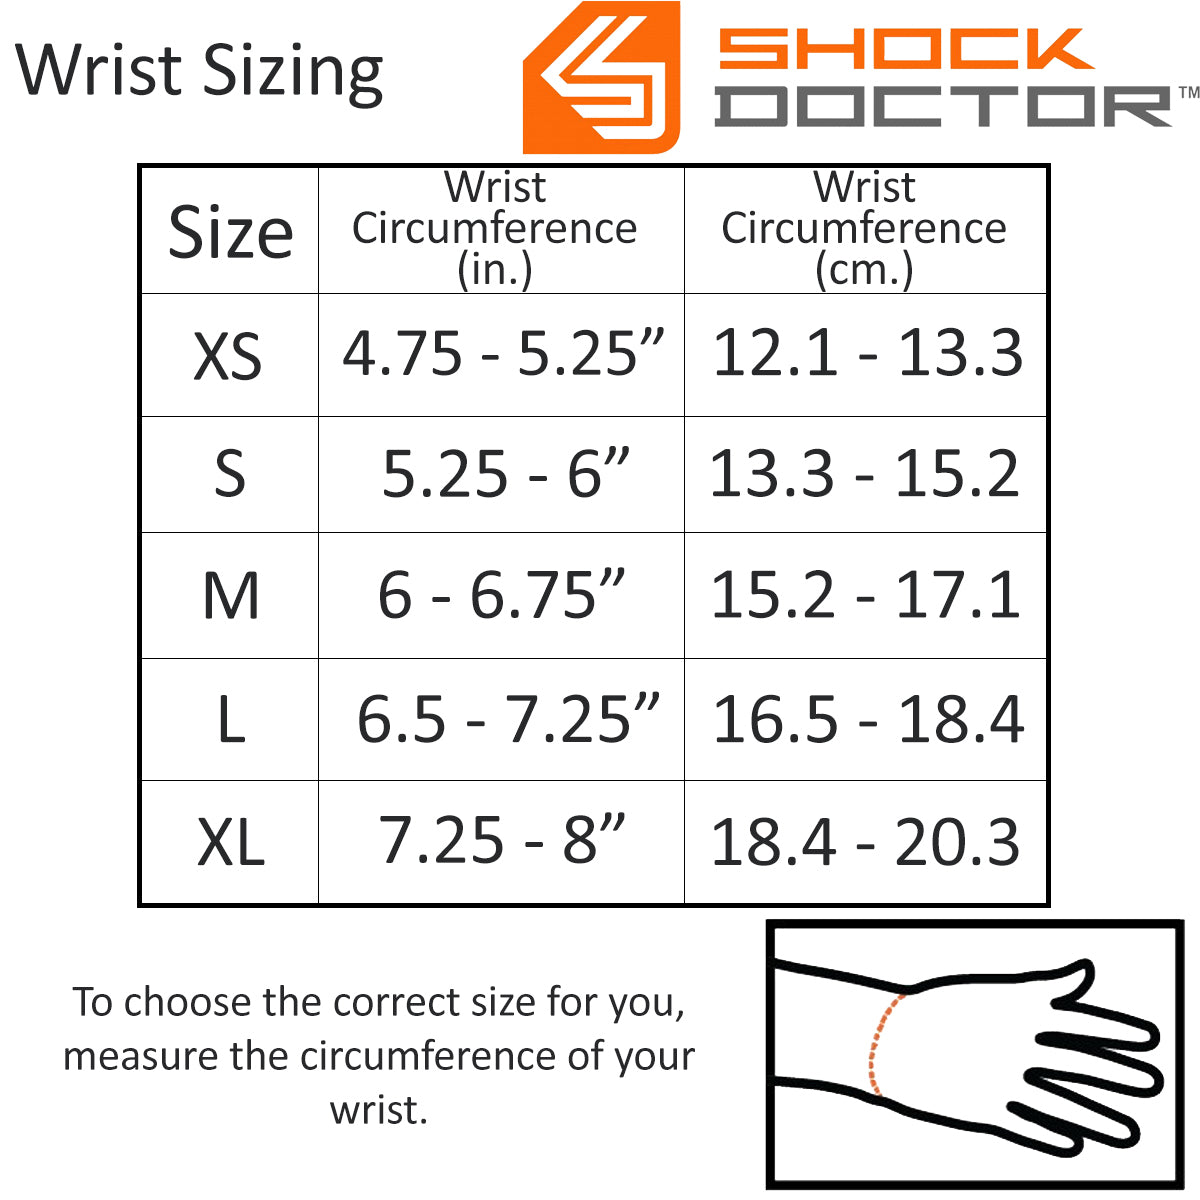 Shock Doctor Wrist 3-Strap Support - Black Shock Doctor